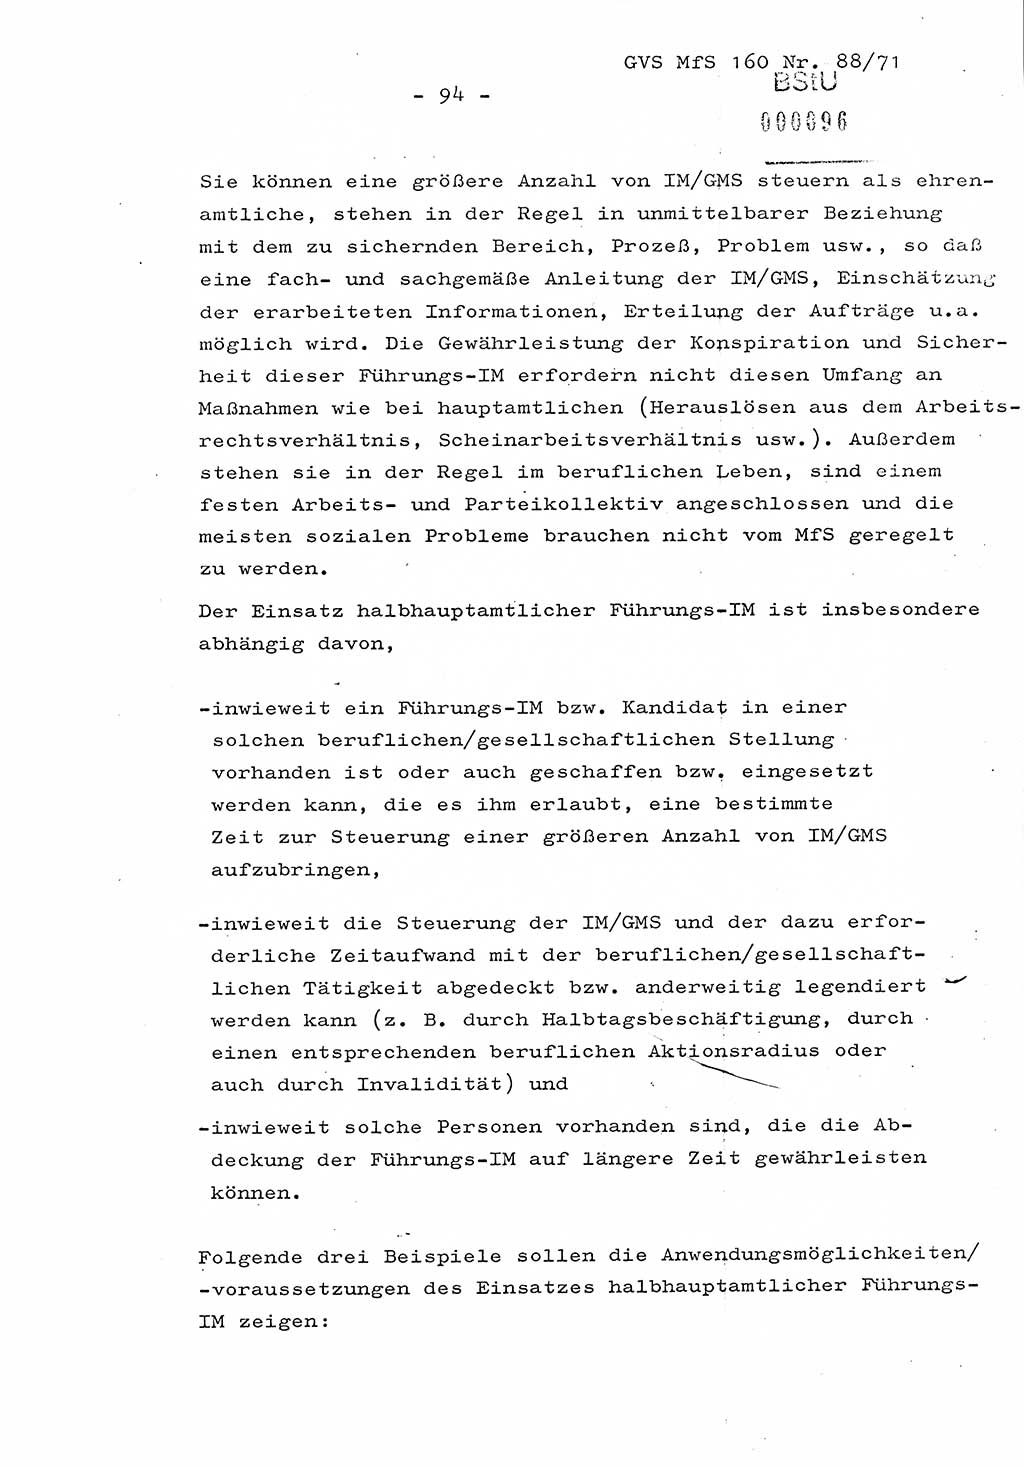 Dissertation Oberstleutnant Josef Schwarz (BV Schwerin), Major Fritz Amm (JHS), Hauptmann Peter Gräßler (JHS), Ministerium für Staatssicherheit (MfS) [Deutsche Demokratische Republik (DDR)], Juristische Hochschule (JHS), Geheime Verschlußsache (GVS) 160-88/71, Potsdam 1972, Seite 94 (Diss. MfS DDR JHS GVS 160-88/71 1972, S. 94)